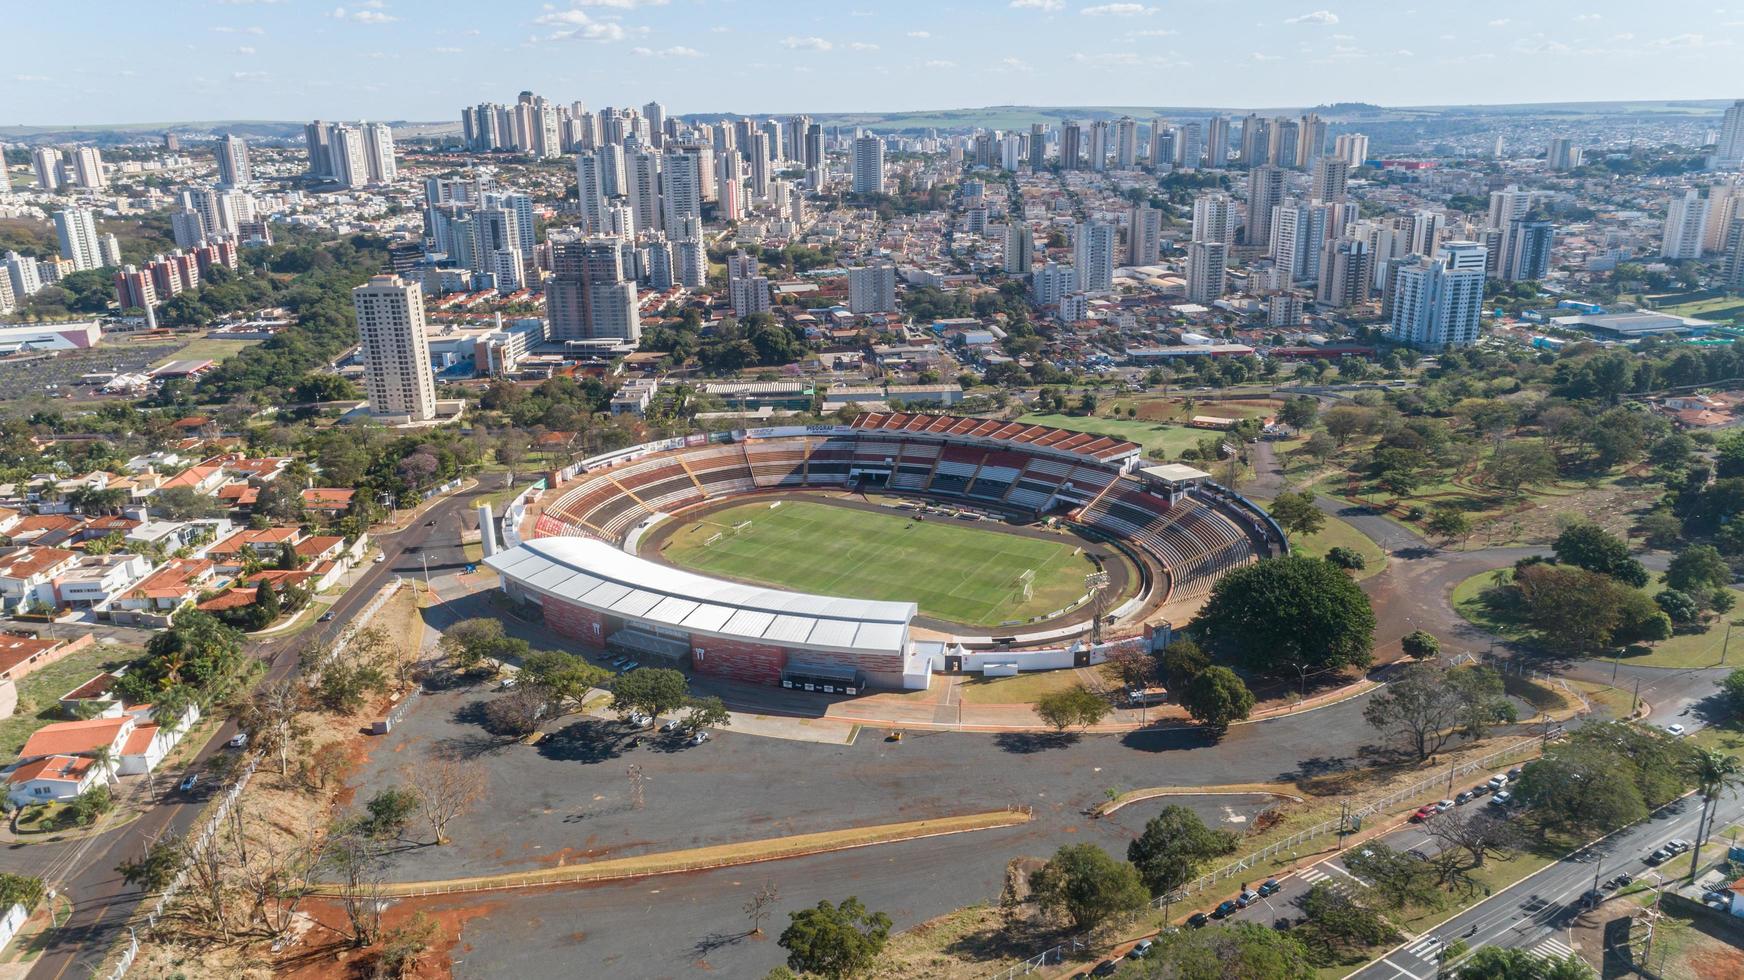 cumbuco, ceara, brasil sep 2019 - vista aérea del estadio plácido castelo foto